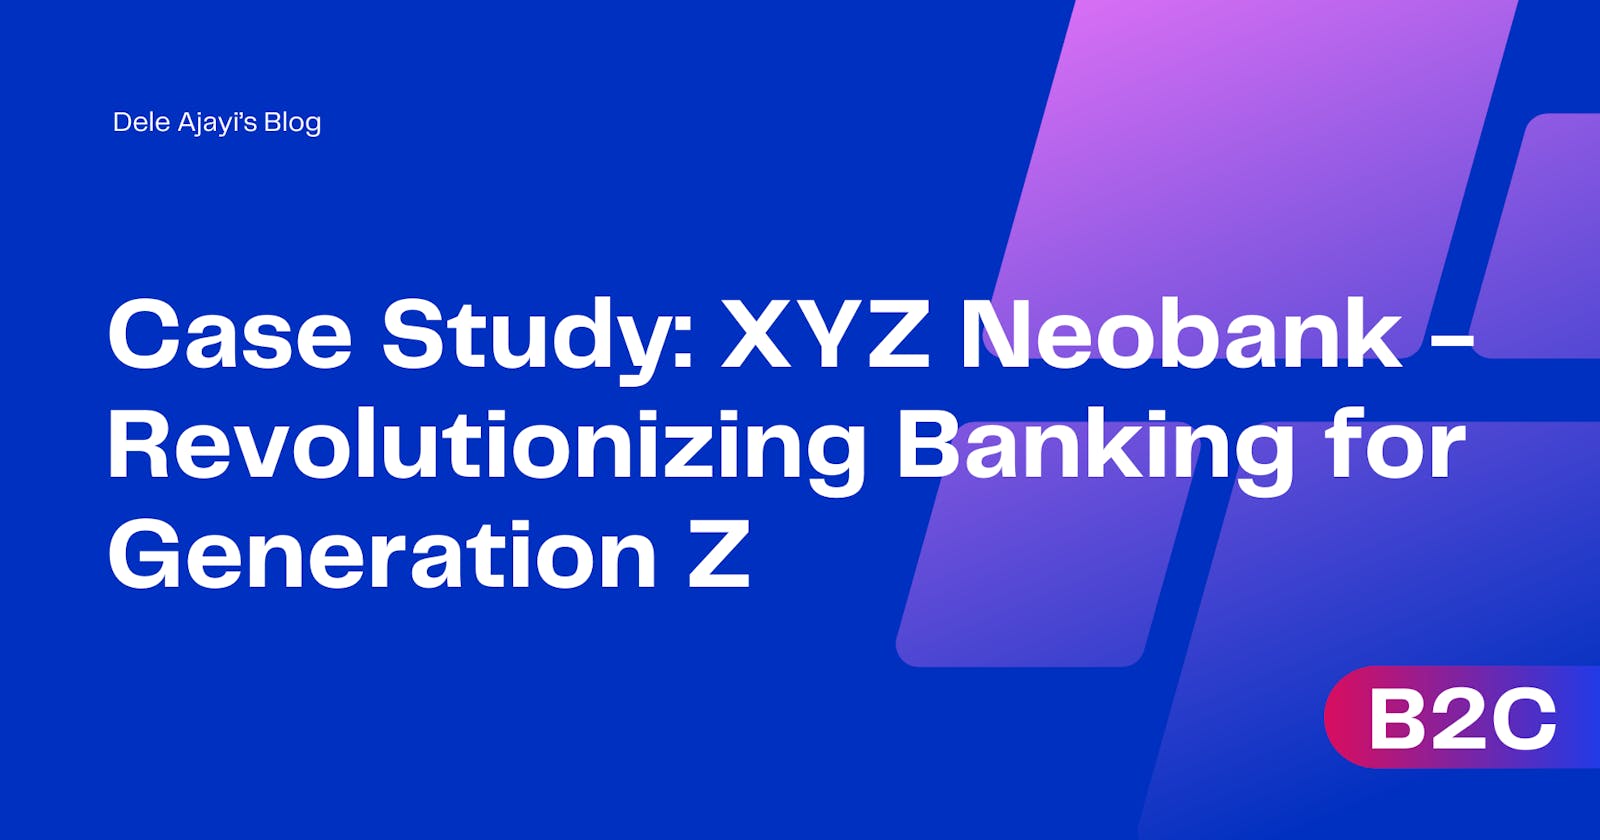 Case Study: XYZ Neobank - Revolutionizing Banking for Generation Z